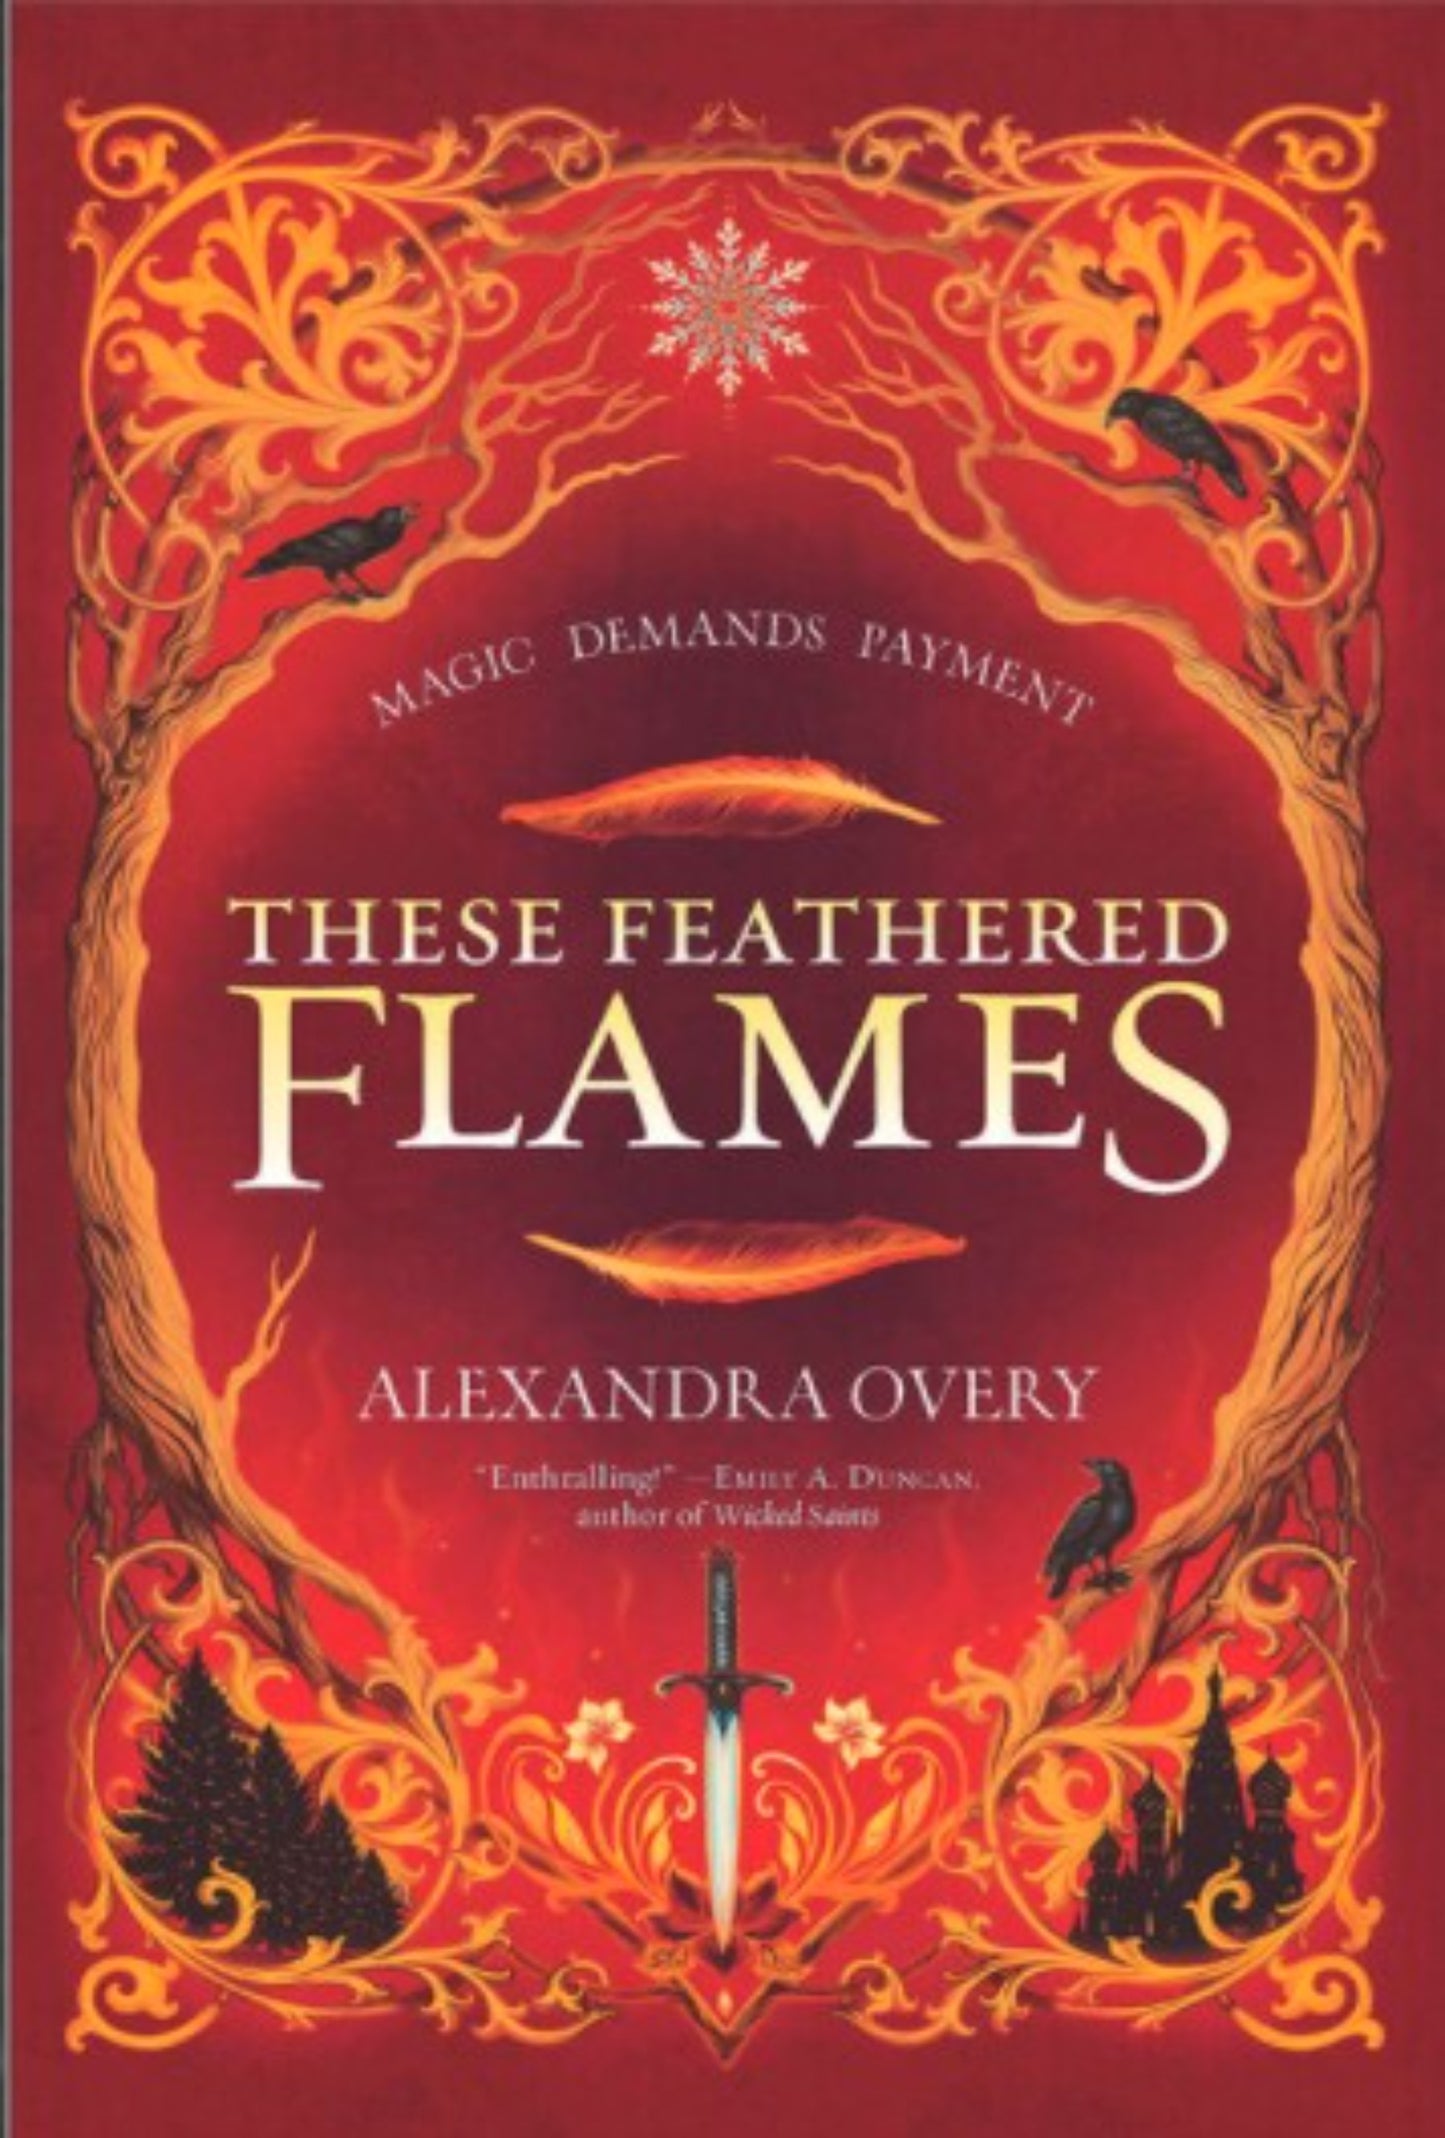 These Feathered Flames (These Feathered Flames #1)